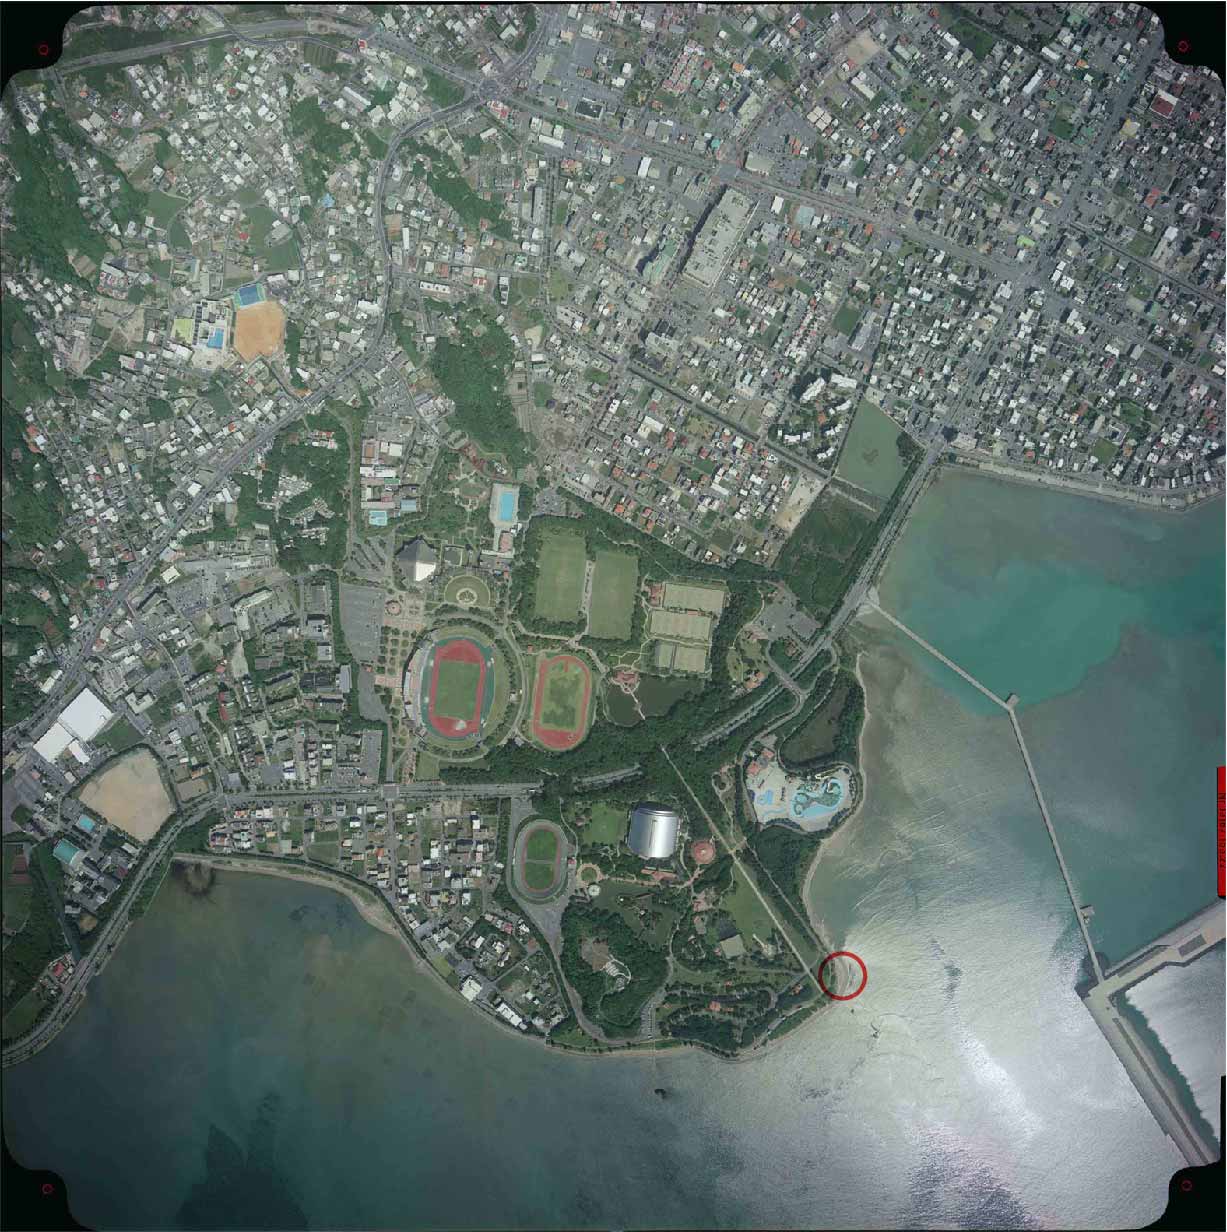 空中写真にみる沖縄のかたち 沖縄県公文書館